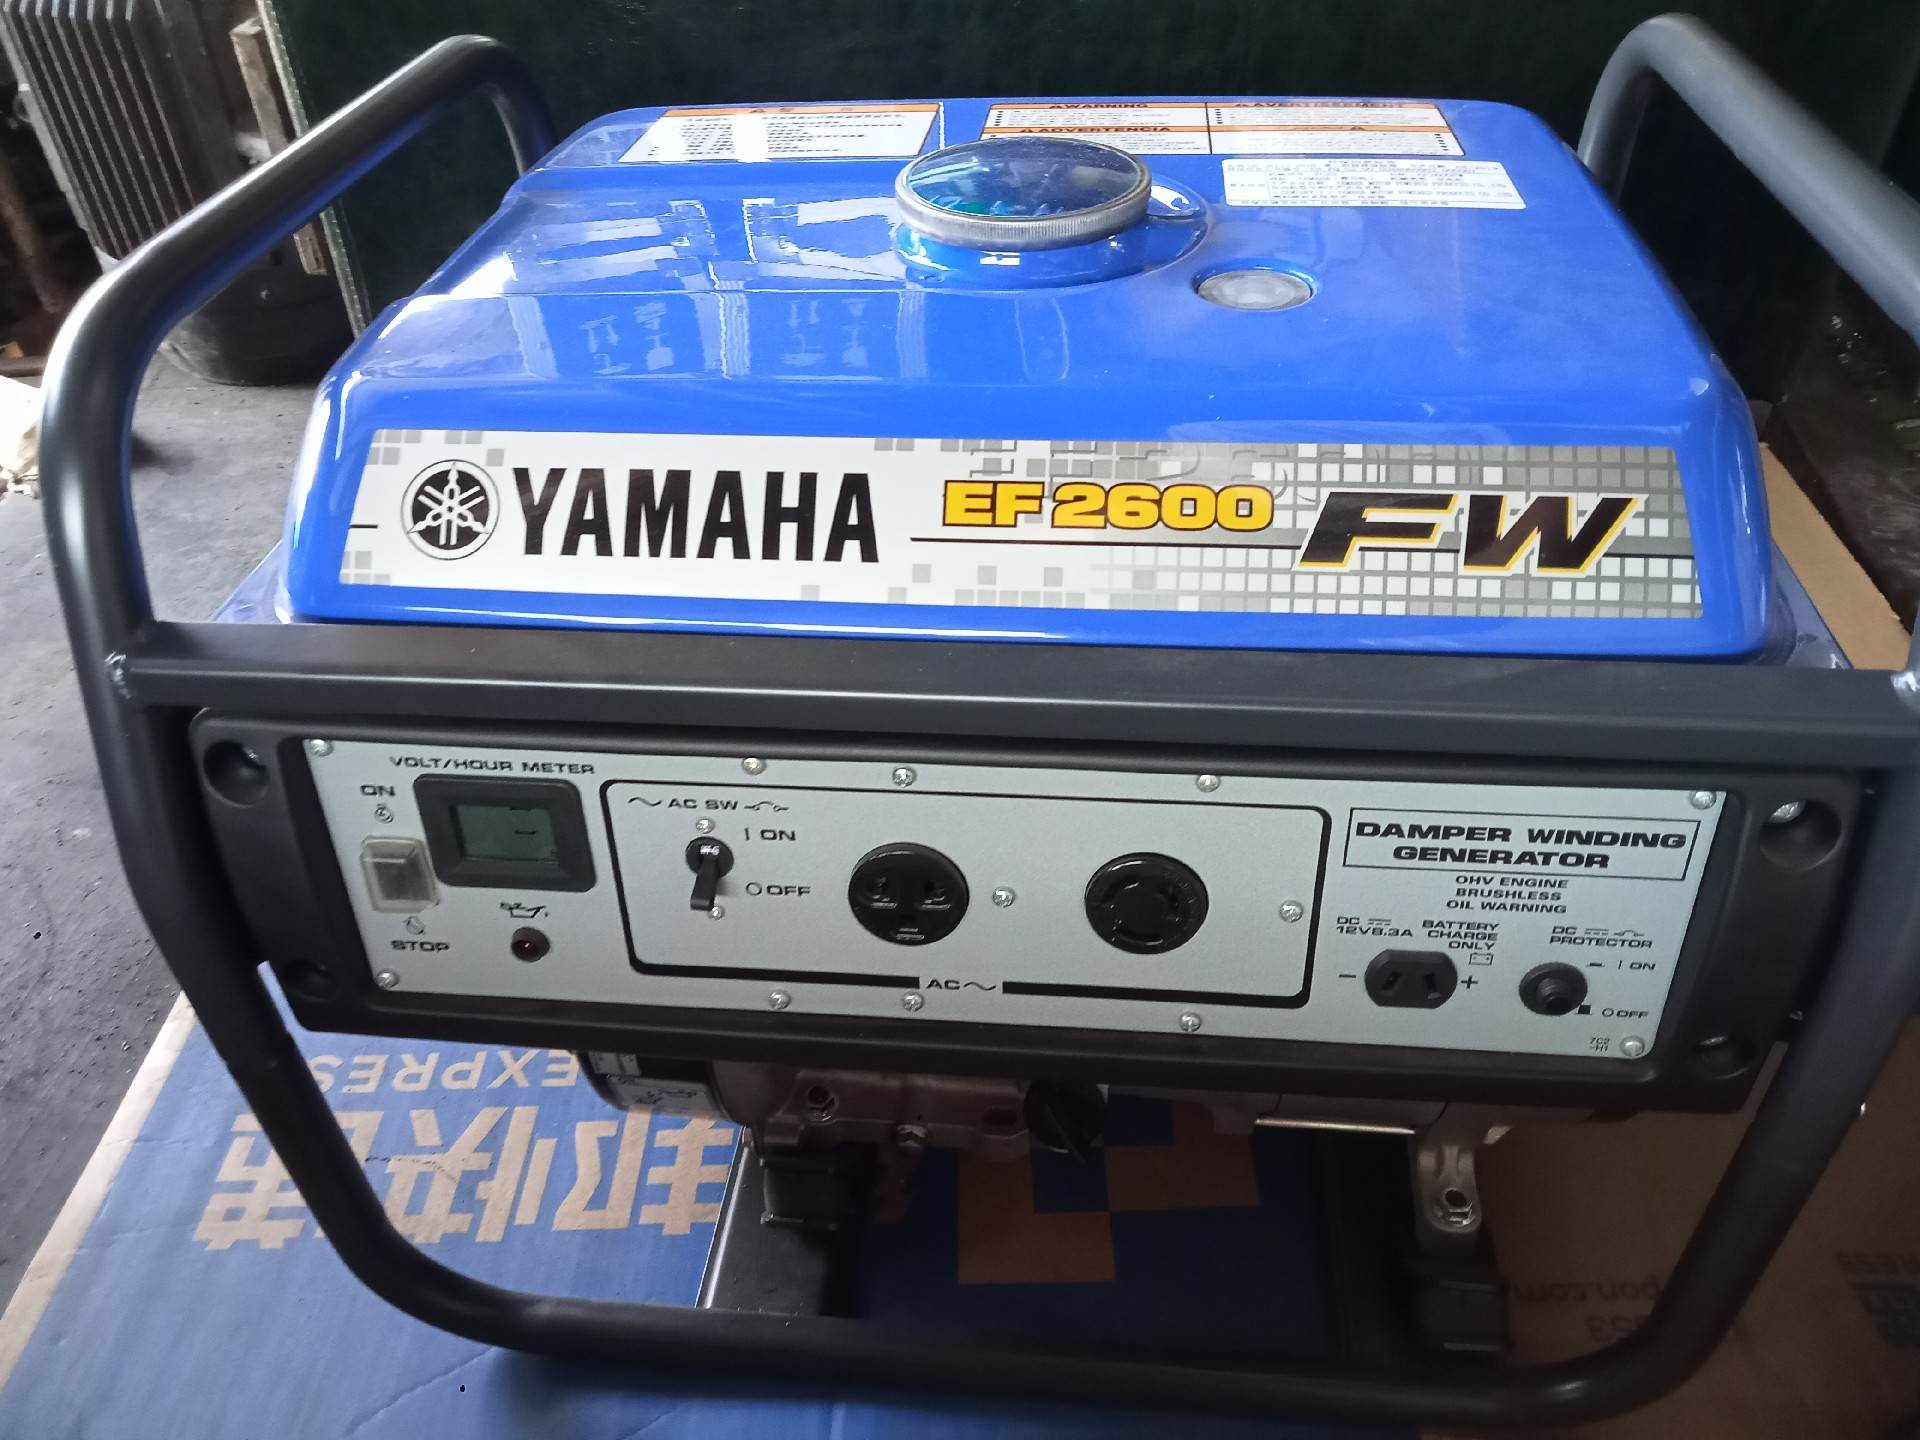 一台EF2600Fw雅玛哈发电机纯新带包装需要的联系价格25